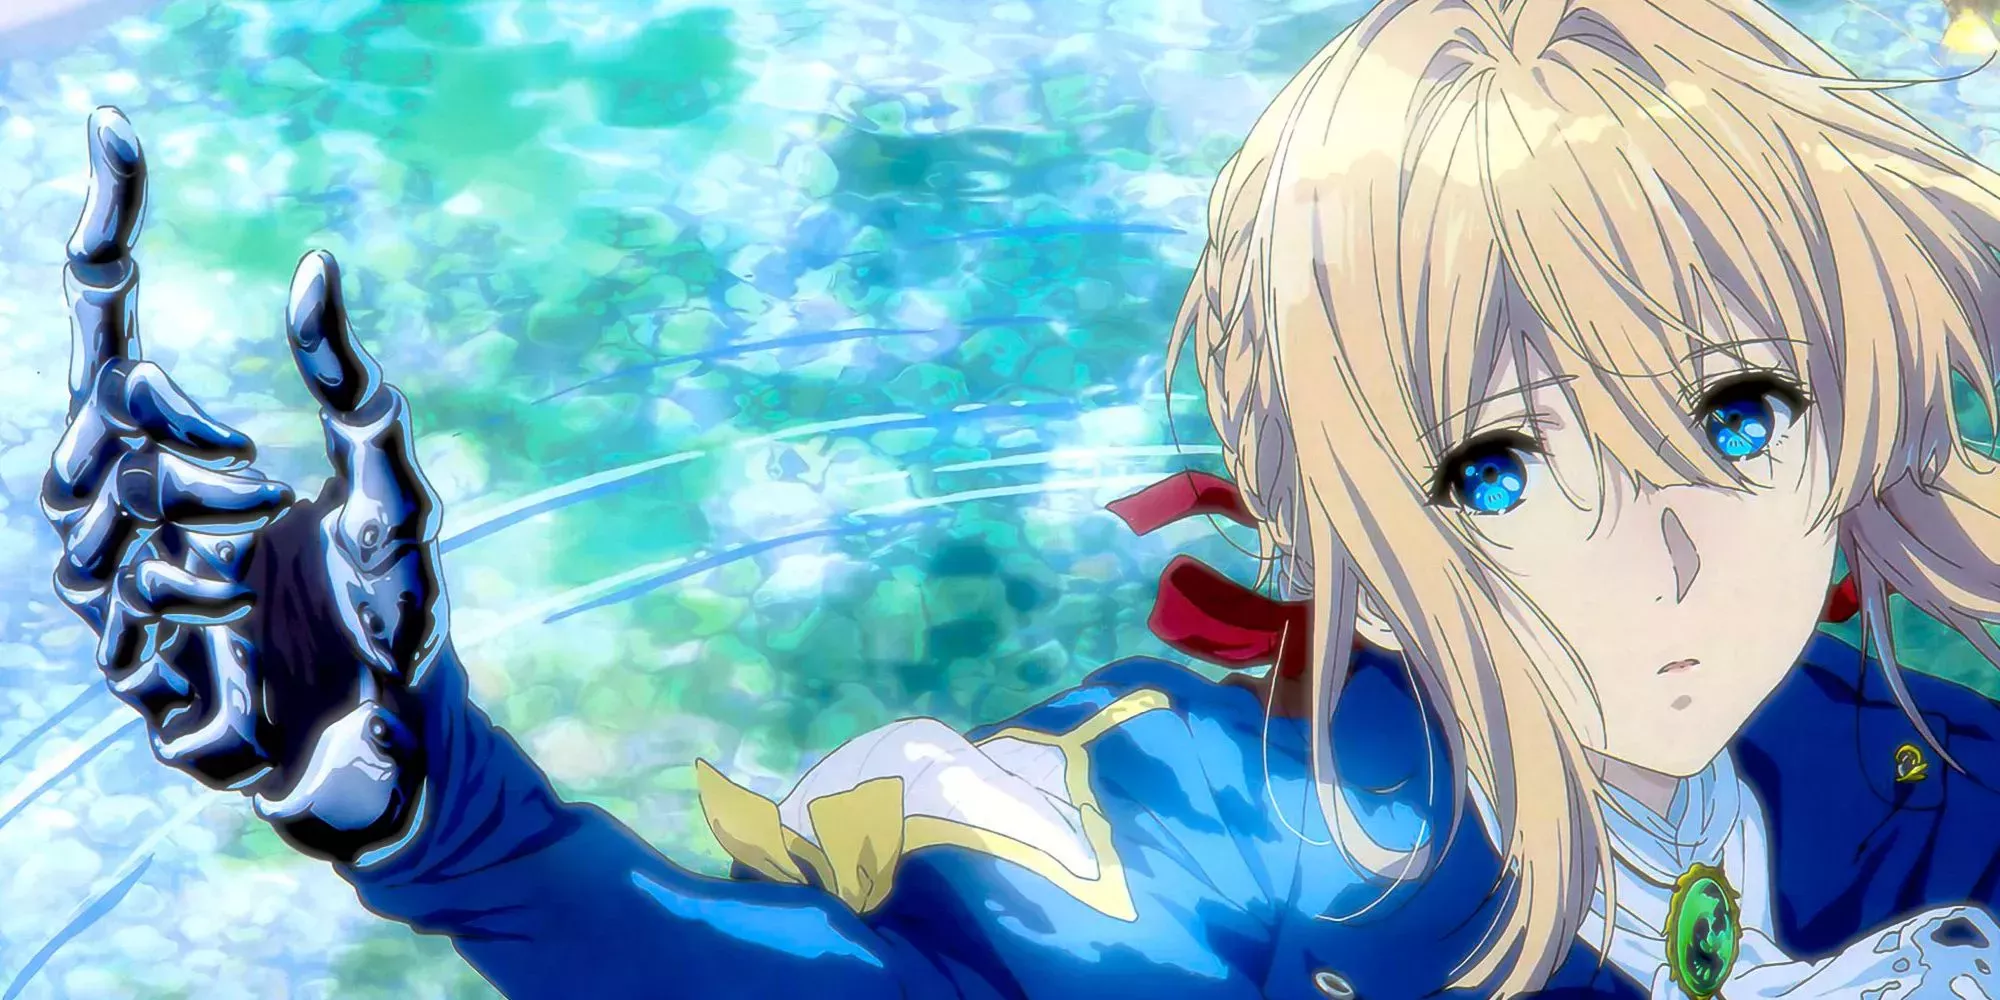 Los 10 mejores personajes de anime con ojos azules, clasificados | Cultture